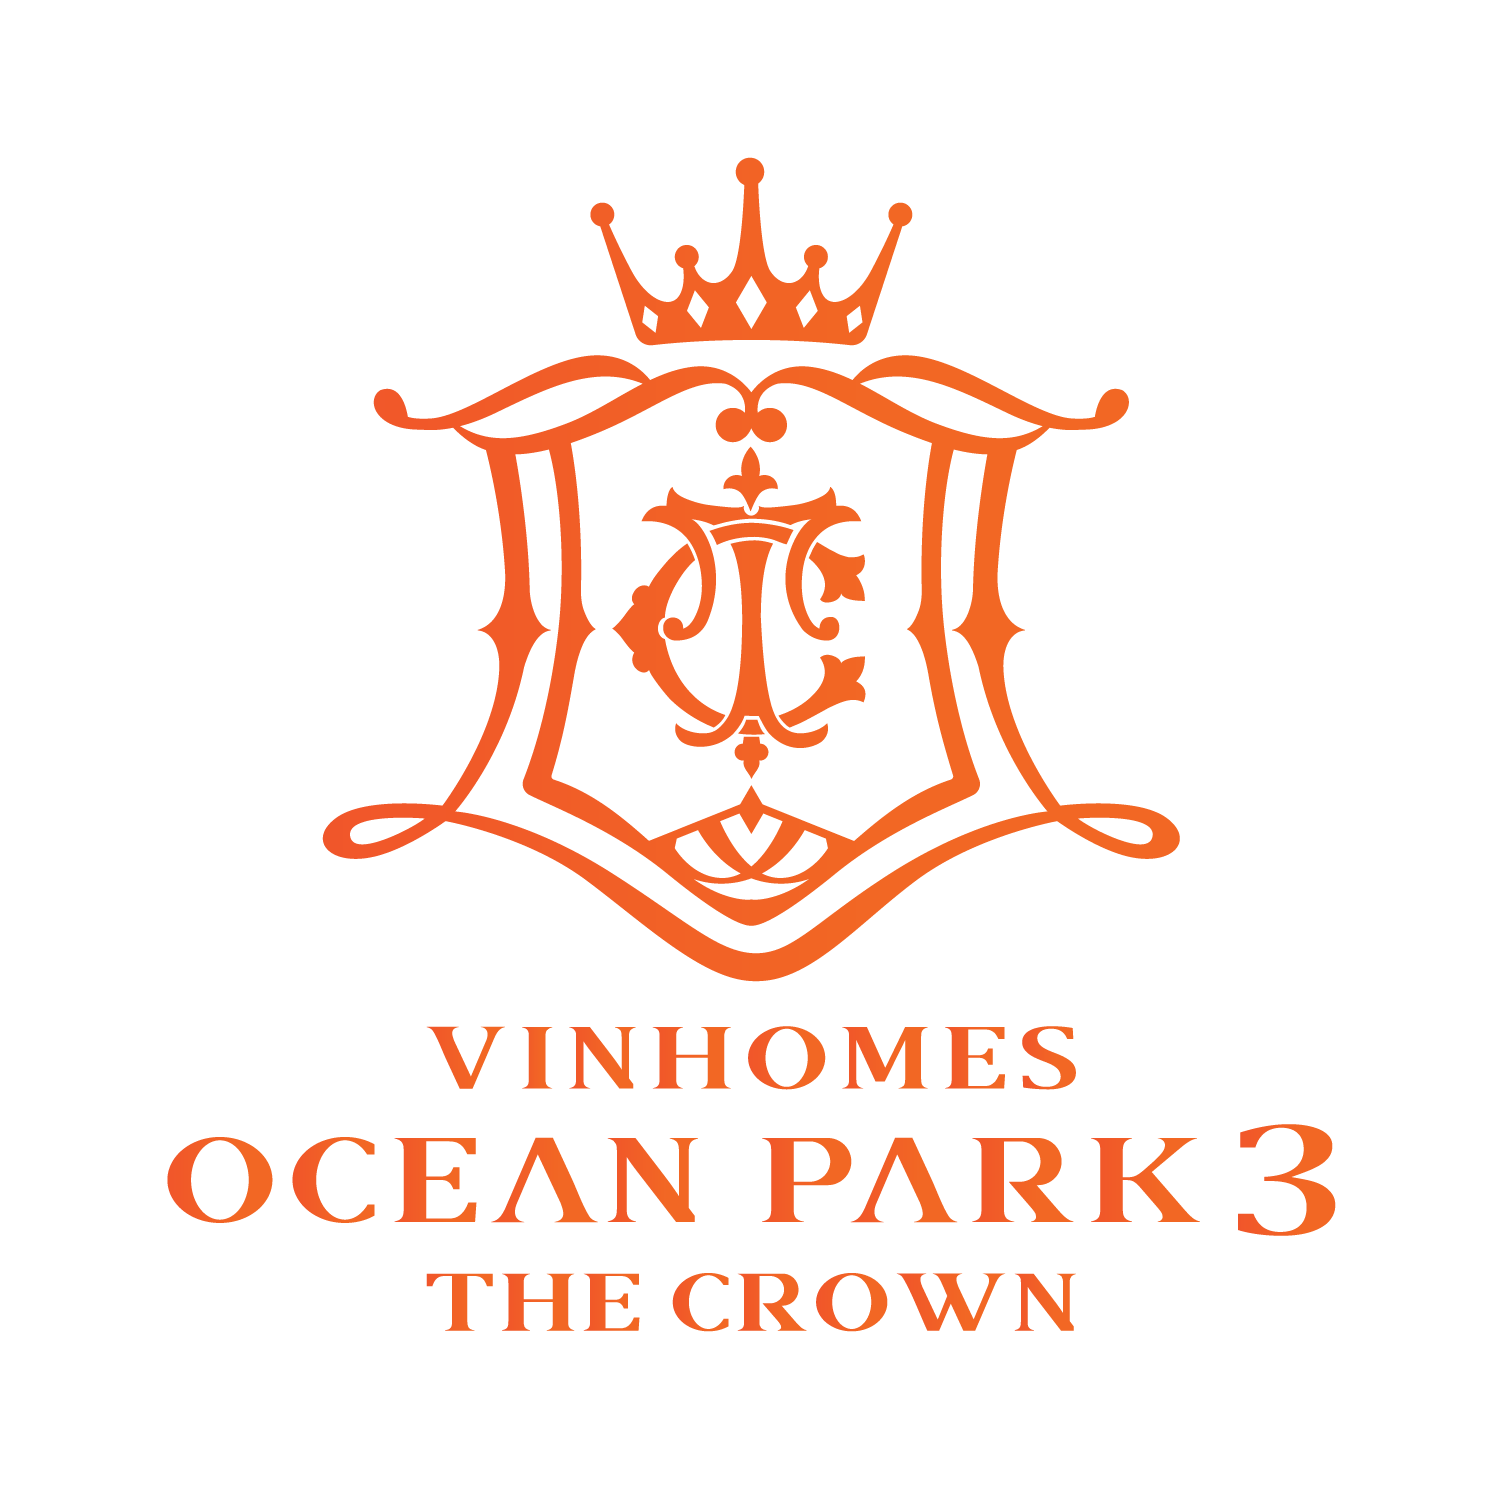 Logo Vinhomes Ocean Park 3 The Crown - Vinhomes Ocean Park 3 The Crown